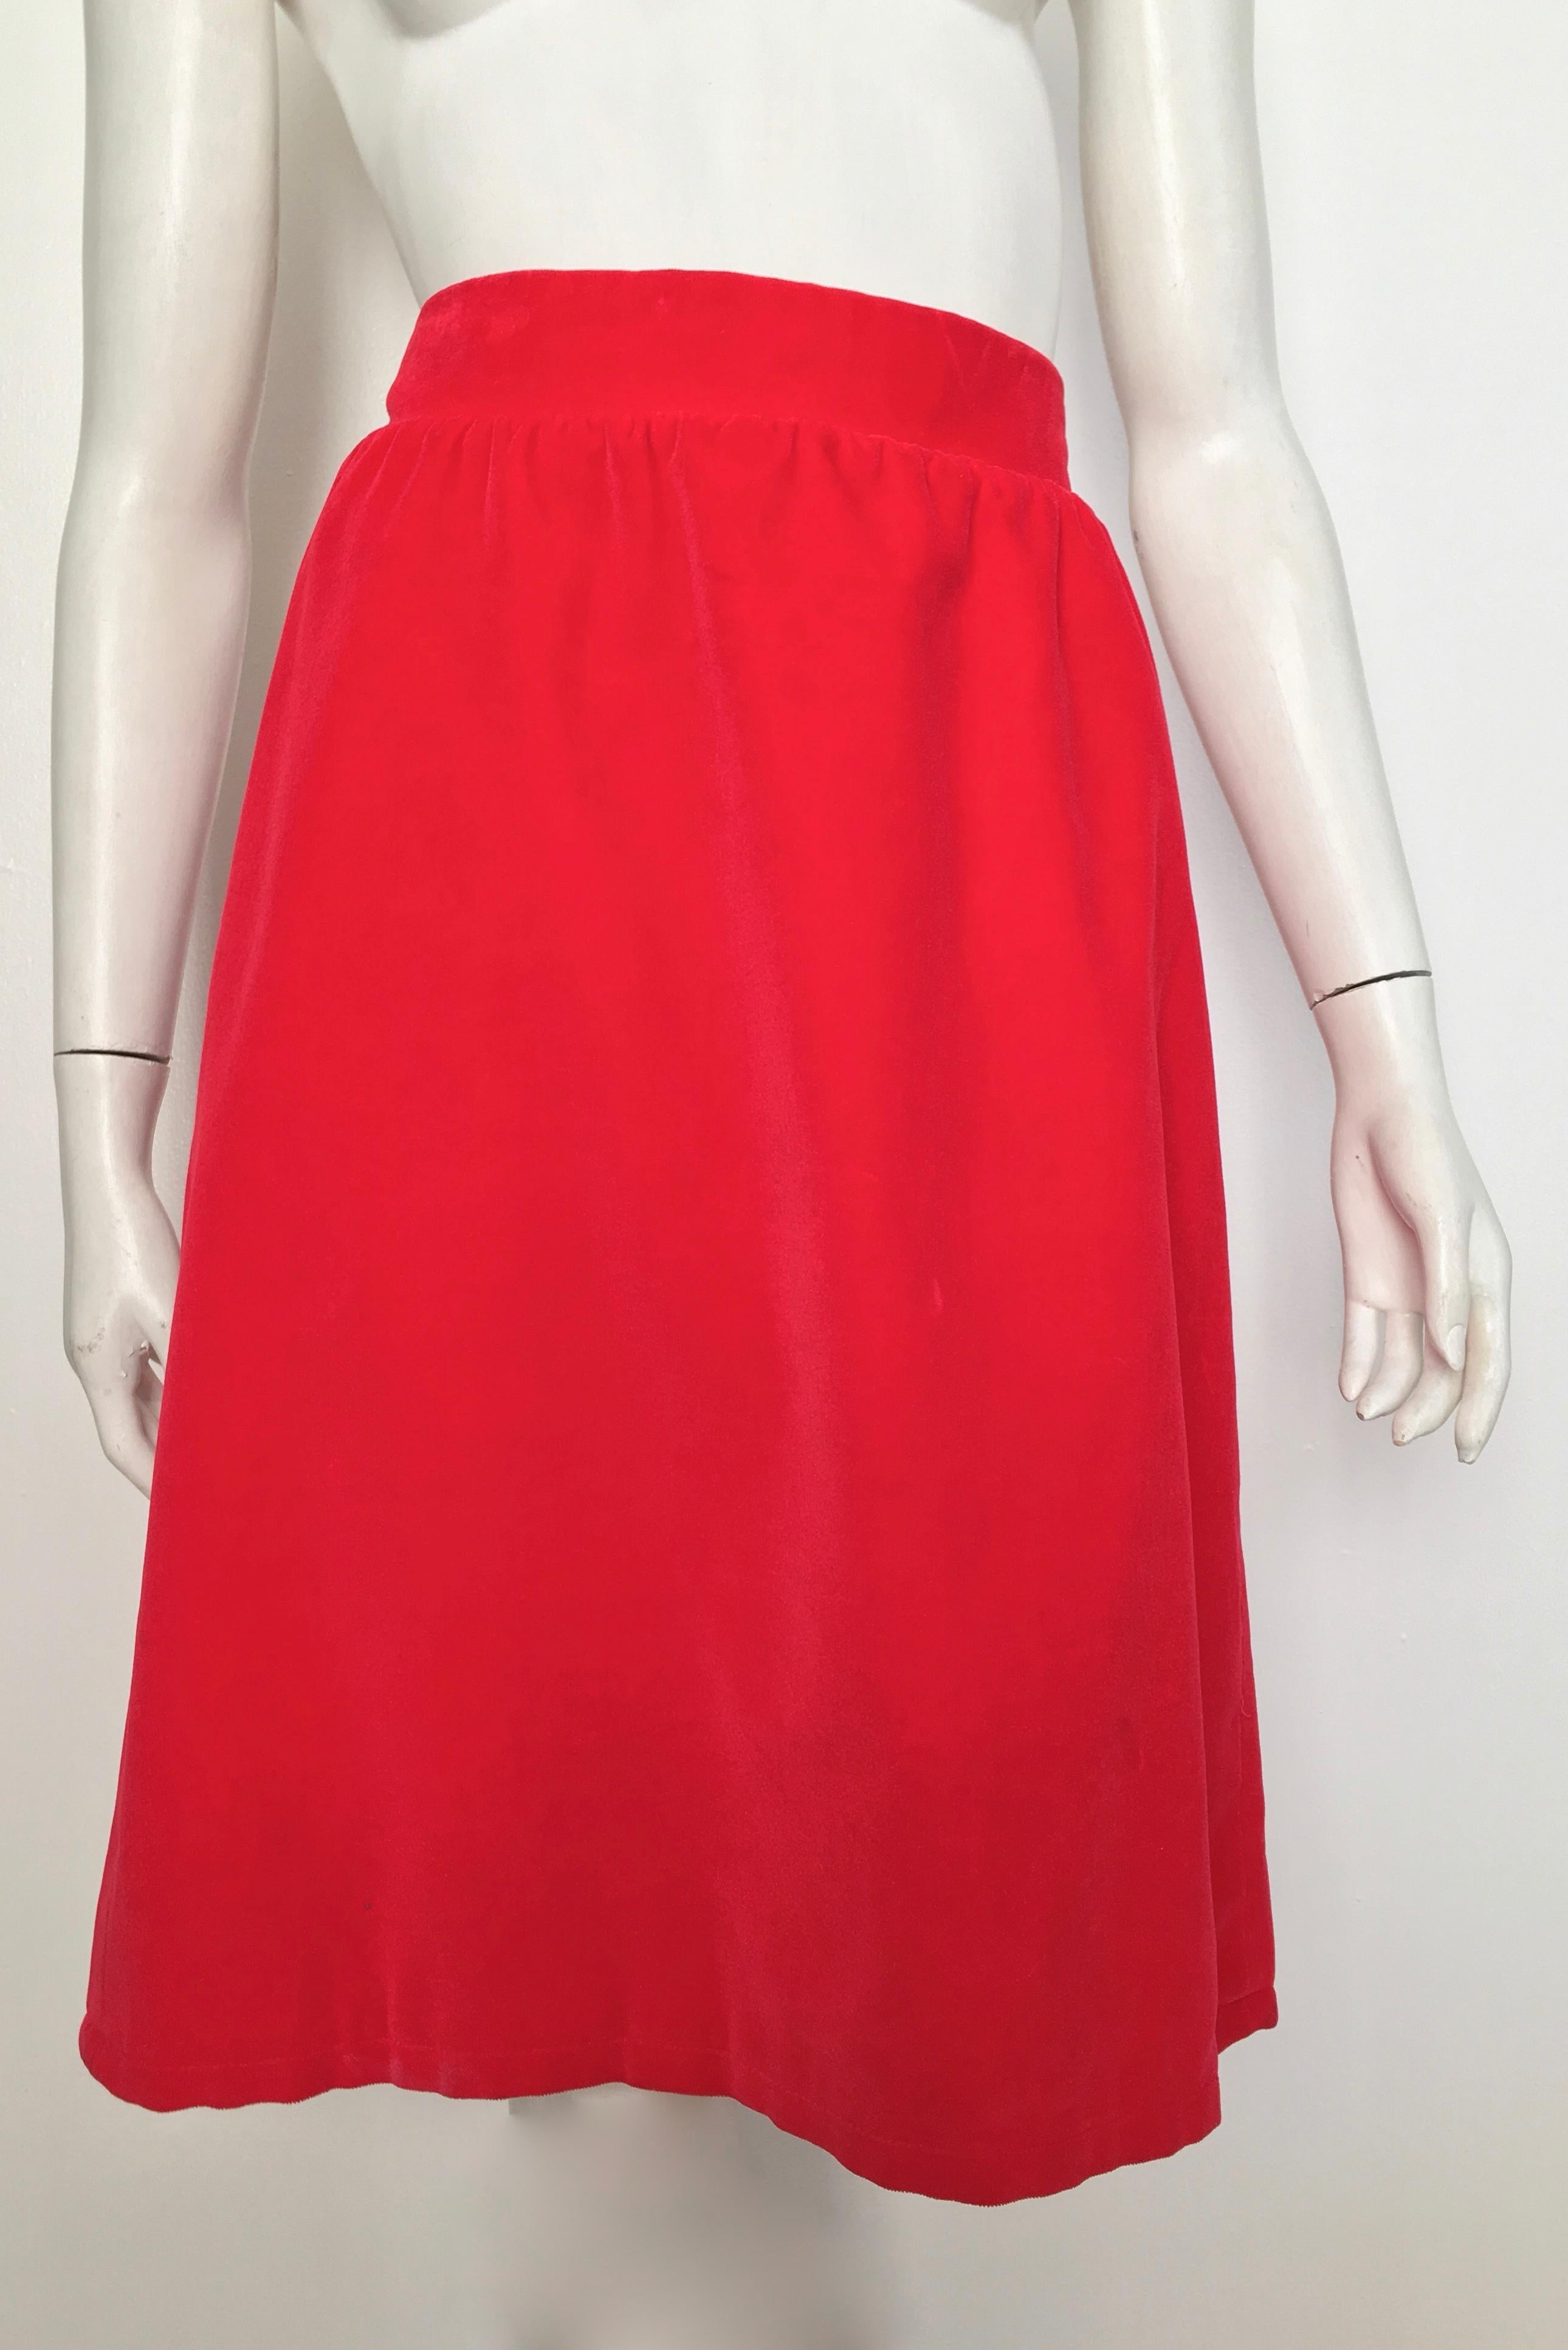 Courreges Paris 1980s Red Cotton Velvet Skirt Size 8 / 10.  For Sale 5